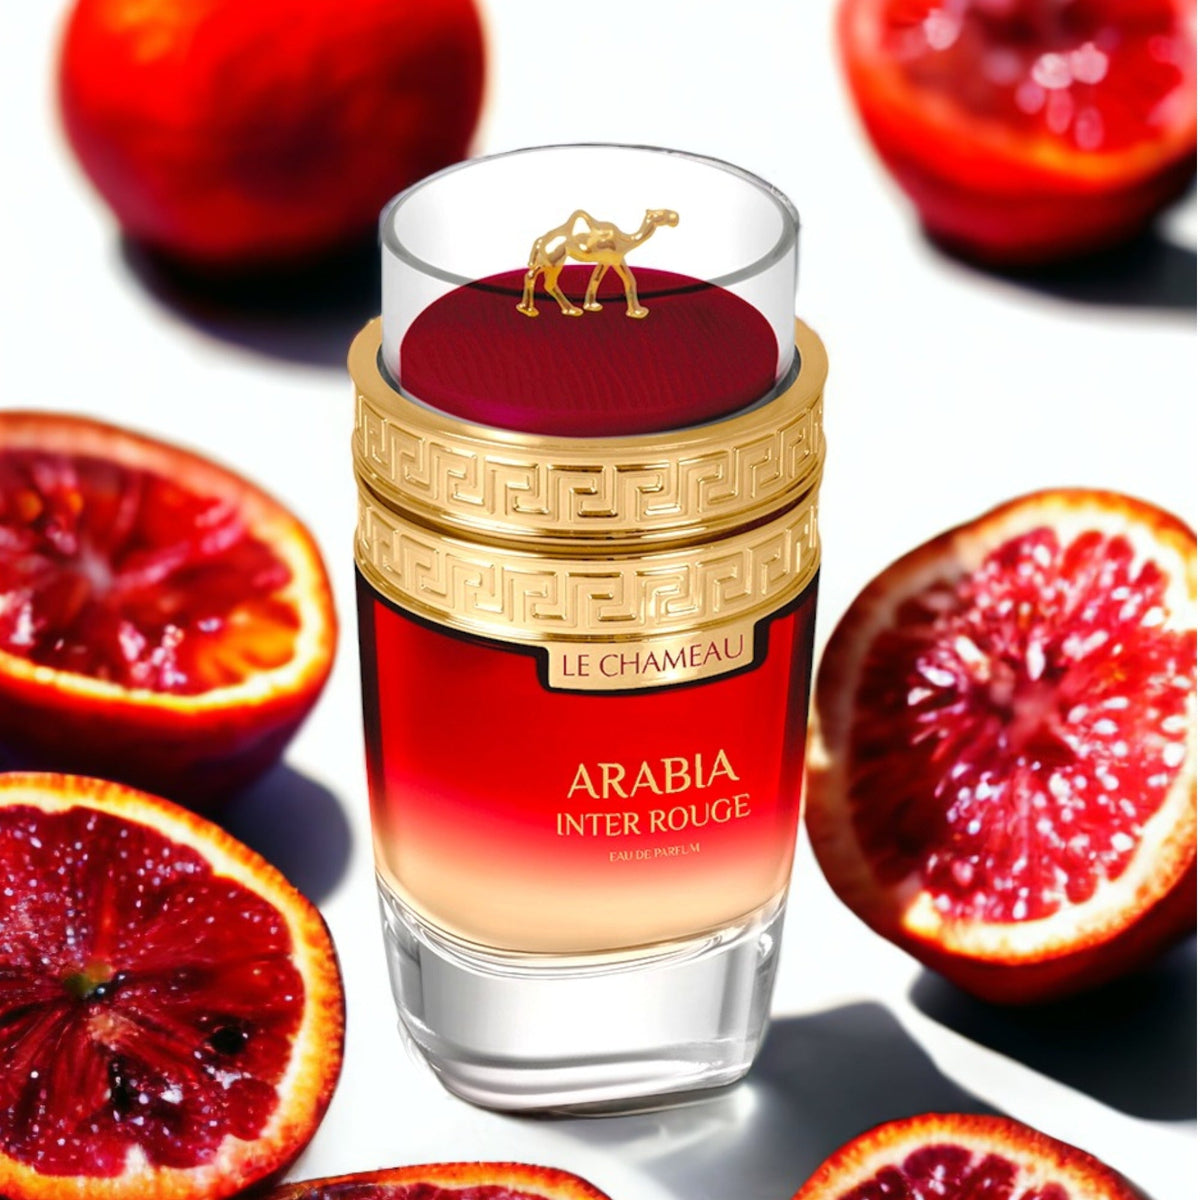 Arabia Inter Rouge By Le Chameau Eau De Parfum 3.4 oz Unisex